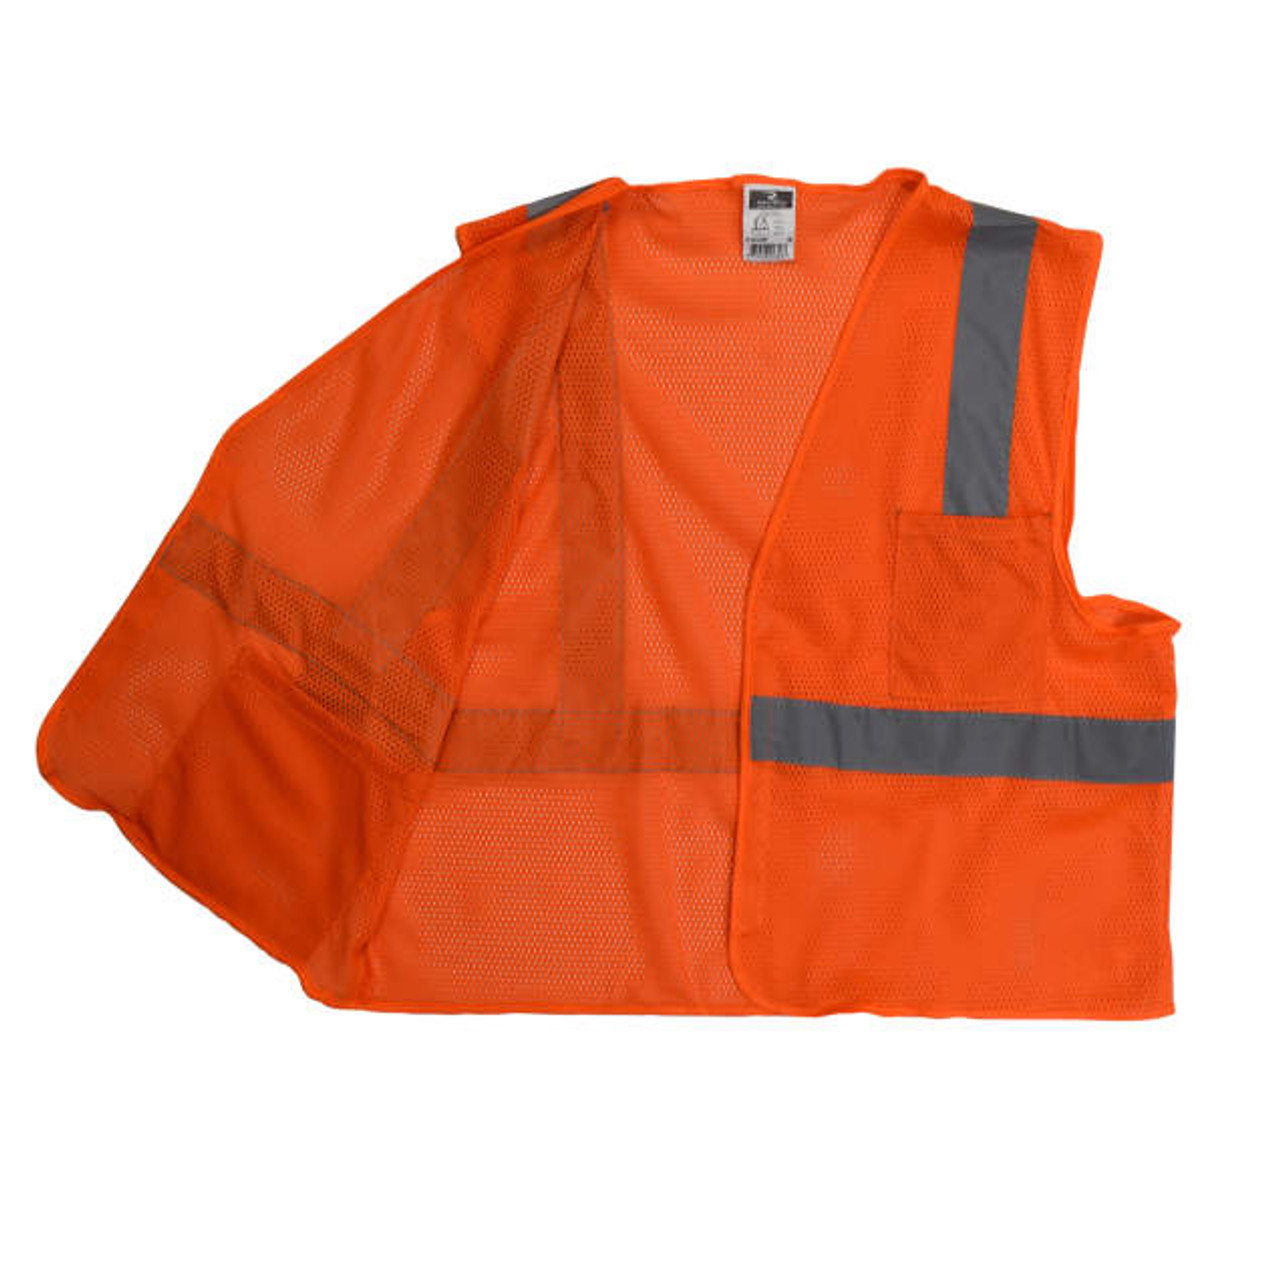 Radians SV2OM Economy Type R Class 2 Mesh Safety Vest (ORANGE)